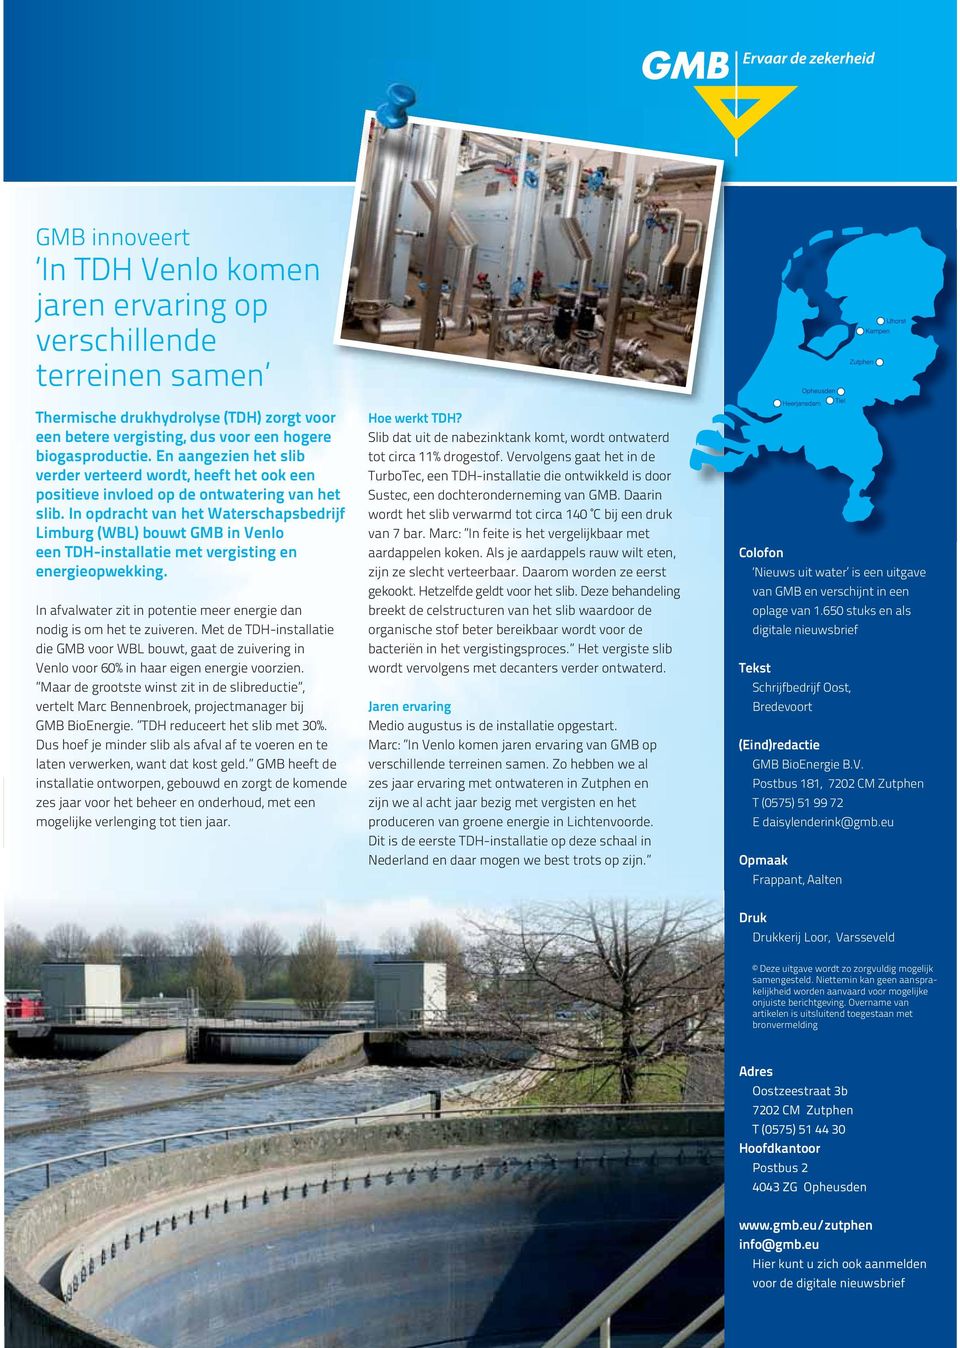 In opdracht van het Waterschapsbedrijf Limburg (WBL) bouwt GMB in Venlo een TDH-installatie met vergisting en energieopwekking.